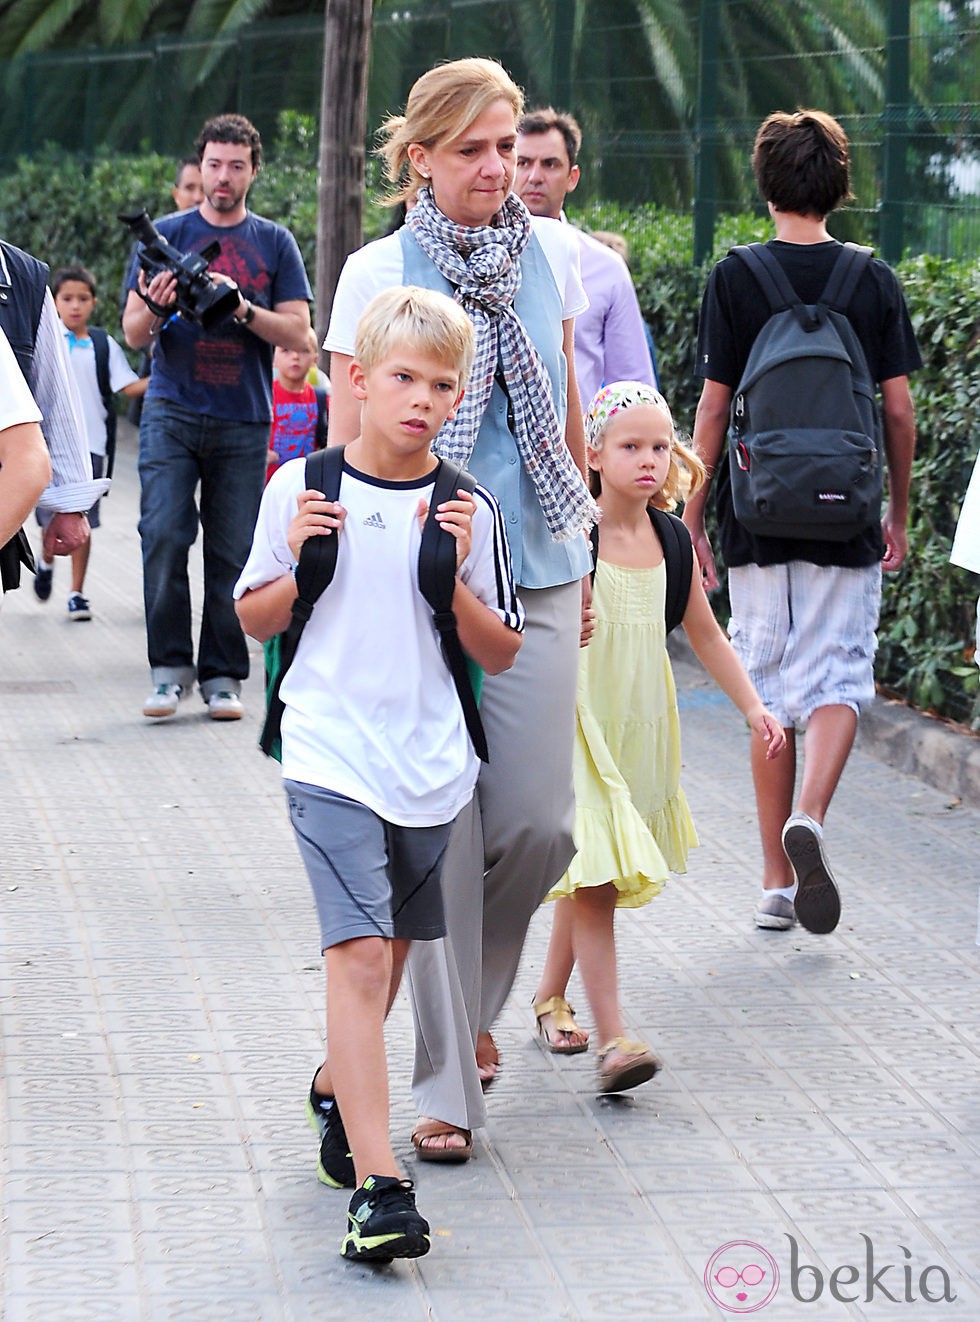 La Infanta Cristina con sus hijos Miguel e Irene a la salida del colegio en Barcelona